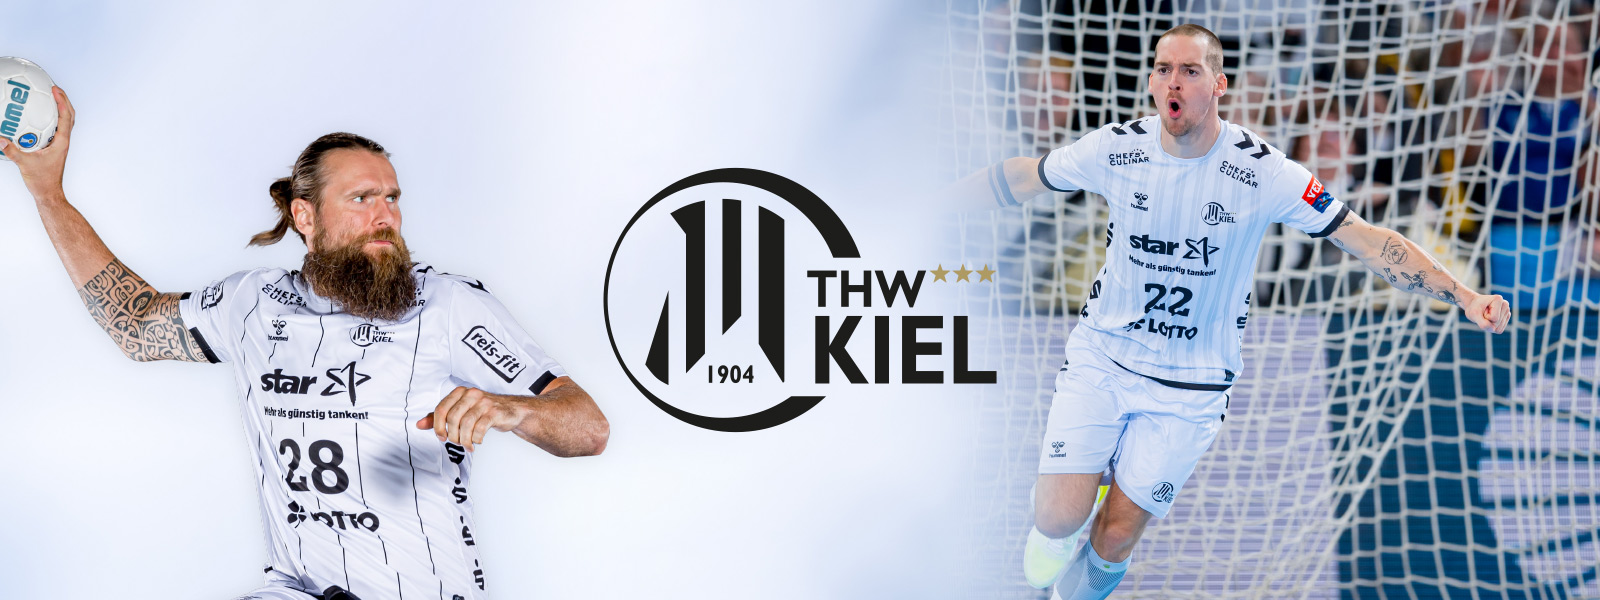 Twee -verdeelde foto van Thw Kiel Handballer met een baard aan het nest aan de linkerkant en andere spelers wanneer gejuich in het veld rechts daartussenin, het logo van de club